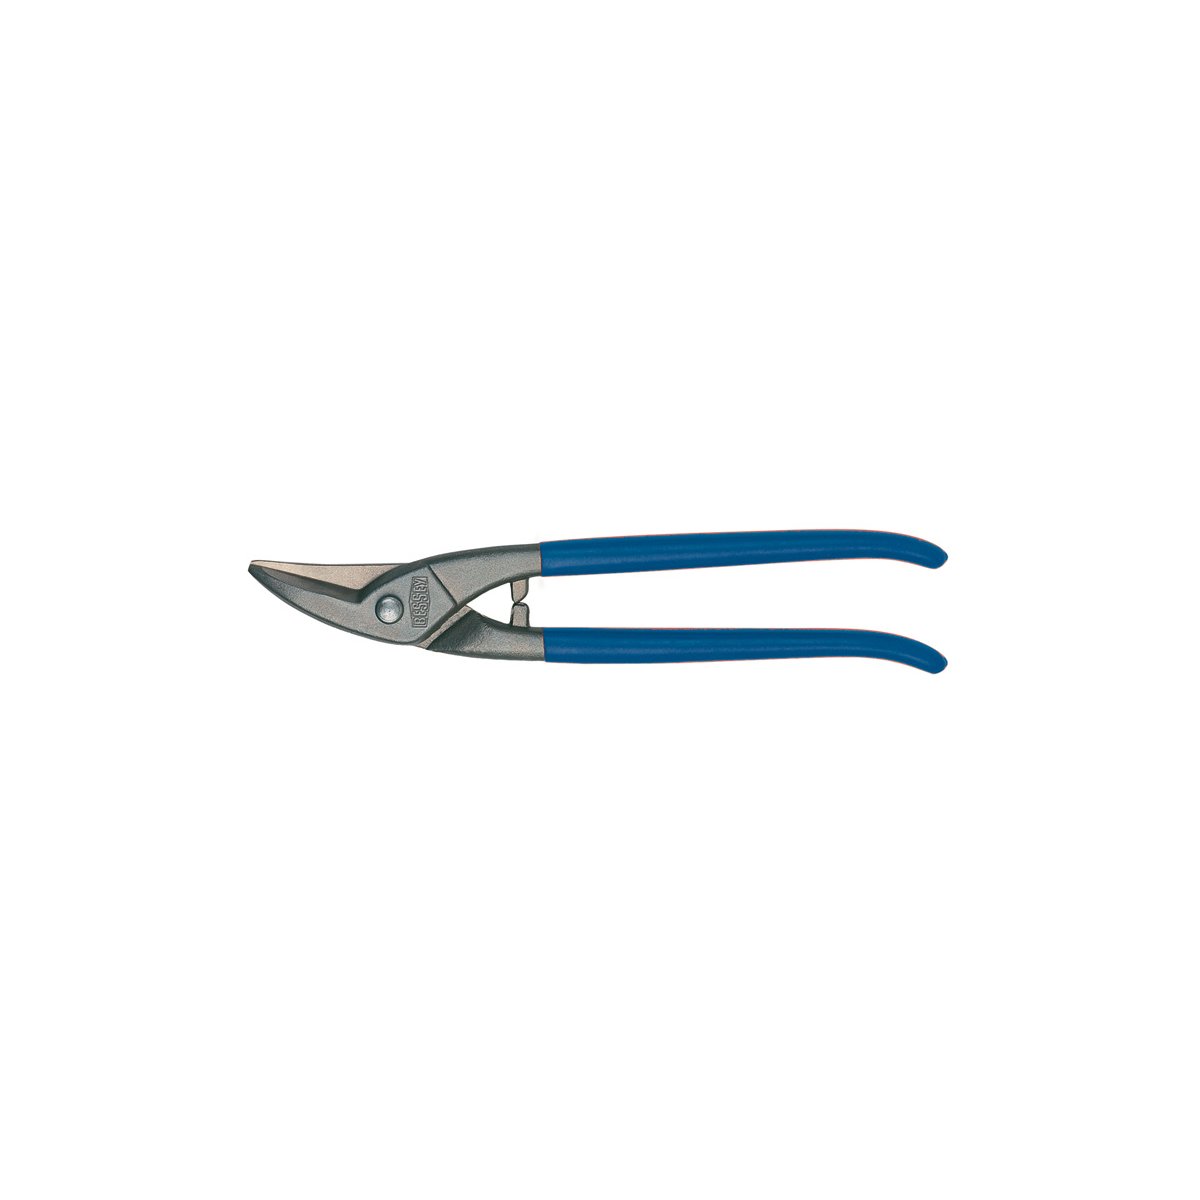 D107-250 Ножницы по металлу, для прорезания отверстий, правые, рез: 1.0 мм, 225 мм, короткий прямой и фигурный рез